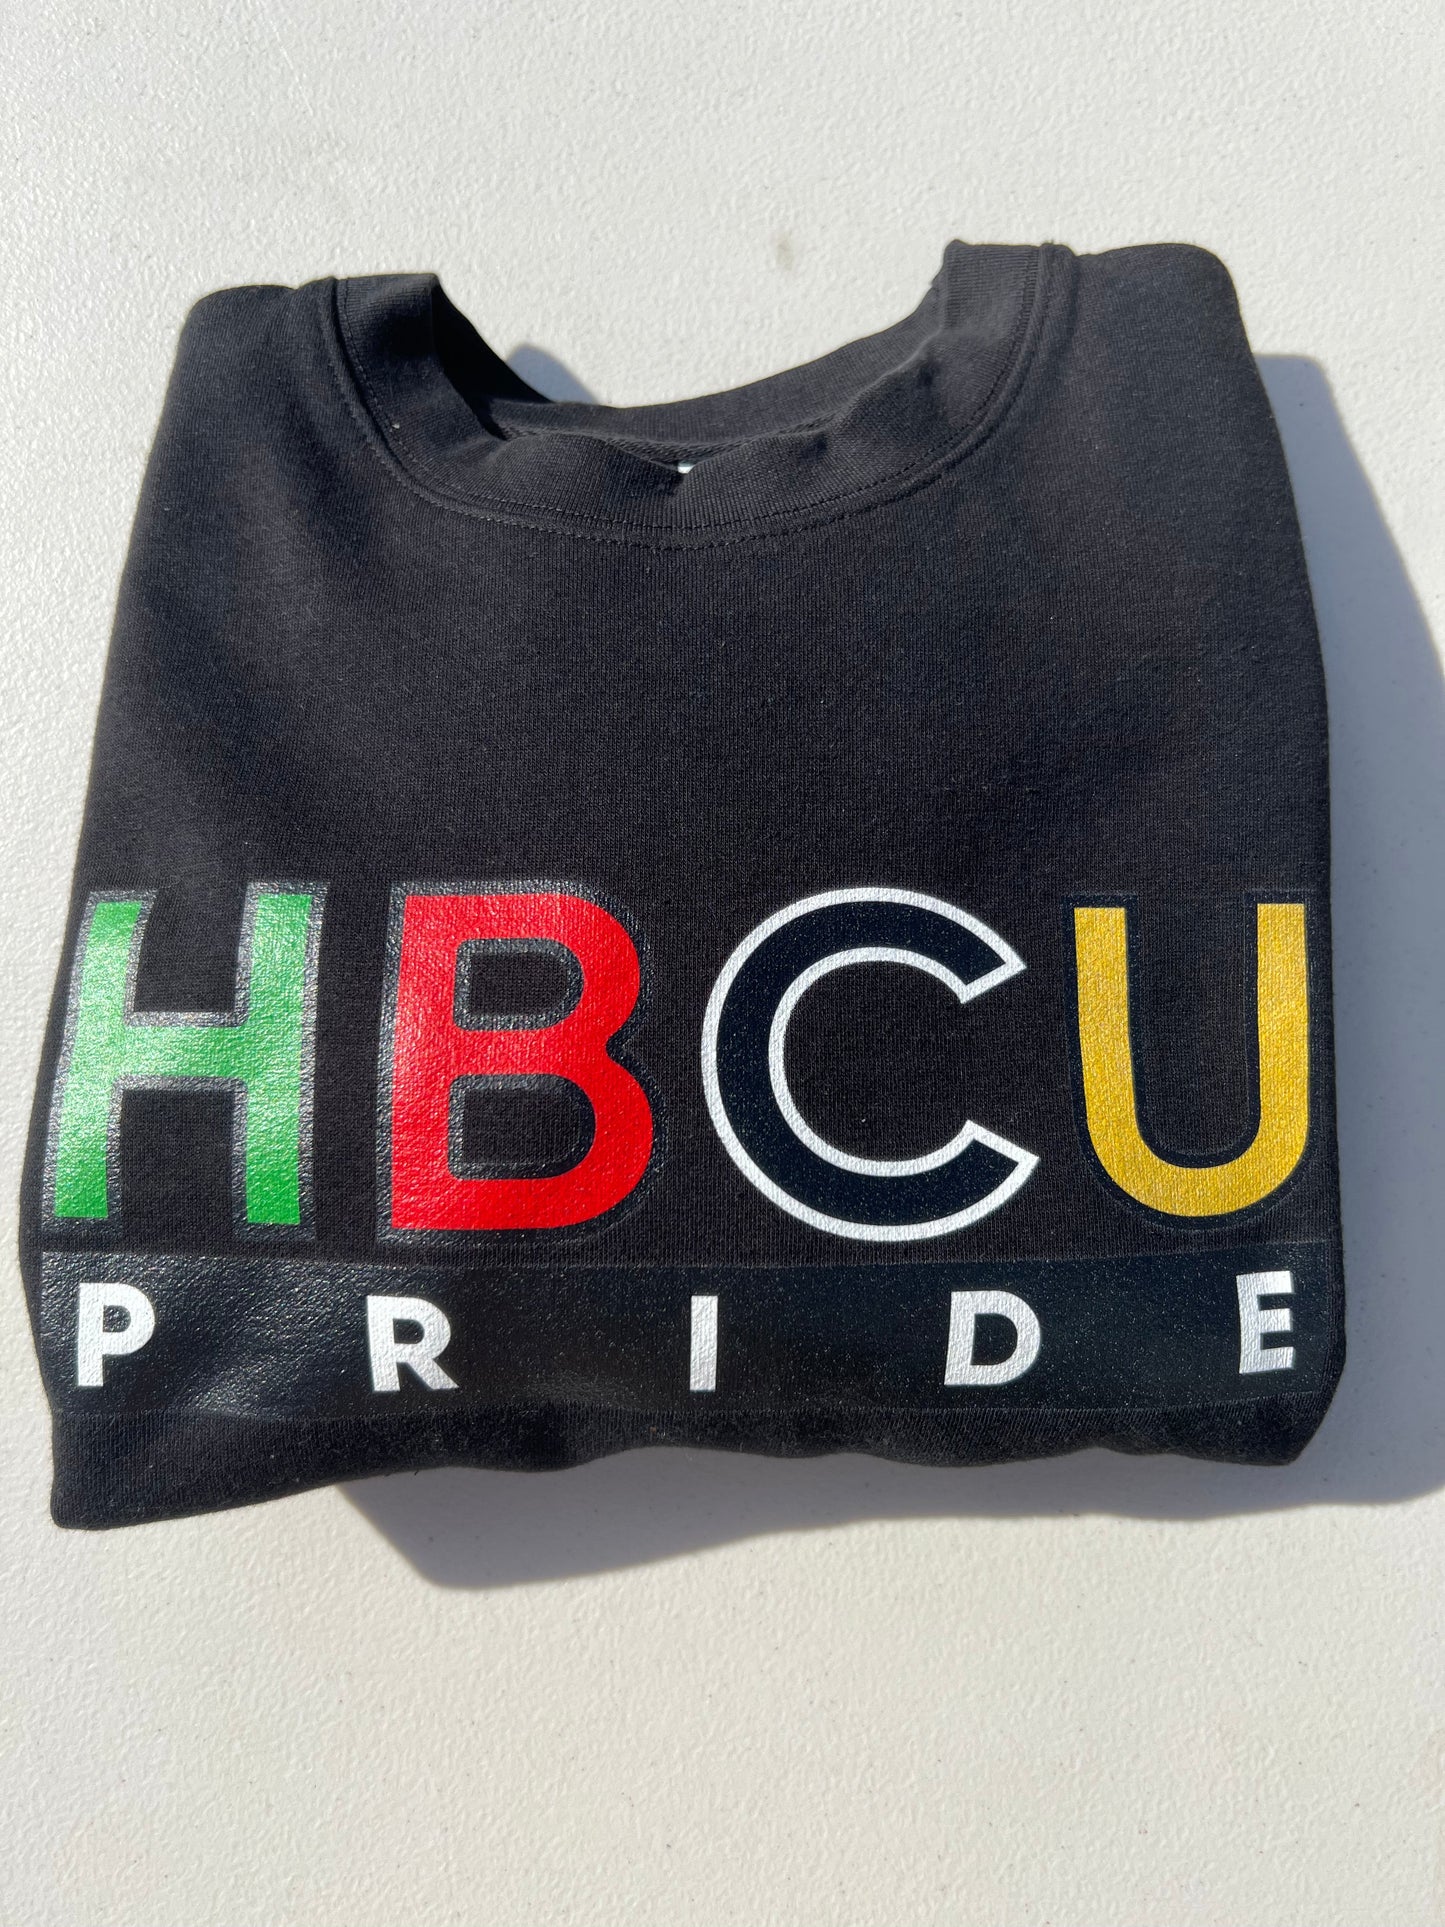 HBCU Pride Hoodie in Olive Green